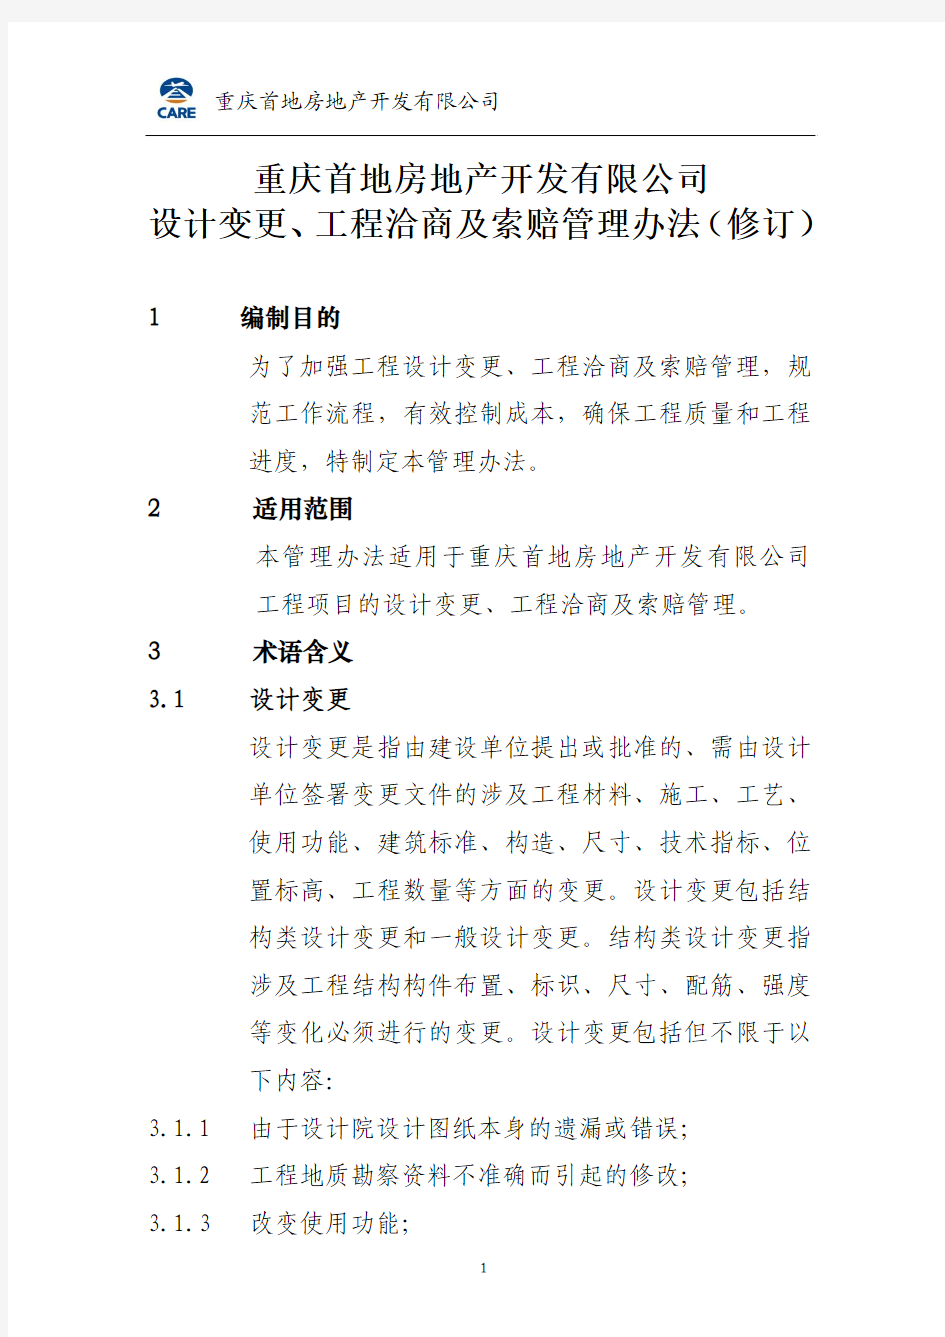 重庆首地房地产开发有限公司变更洽商管理办法(修订) (1)